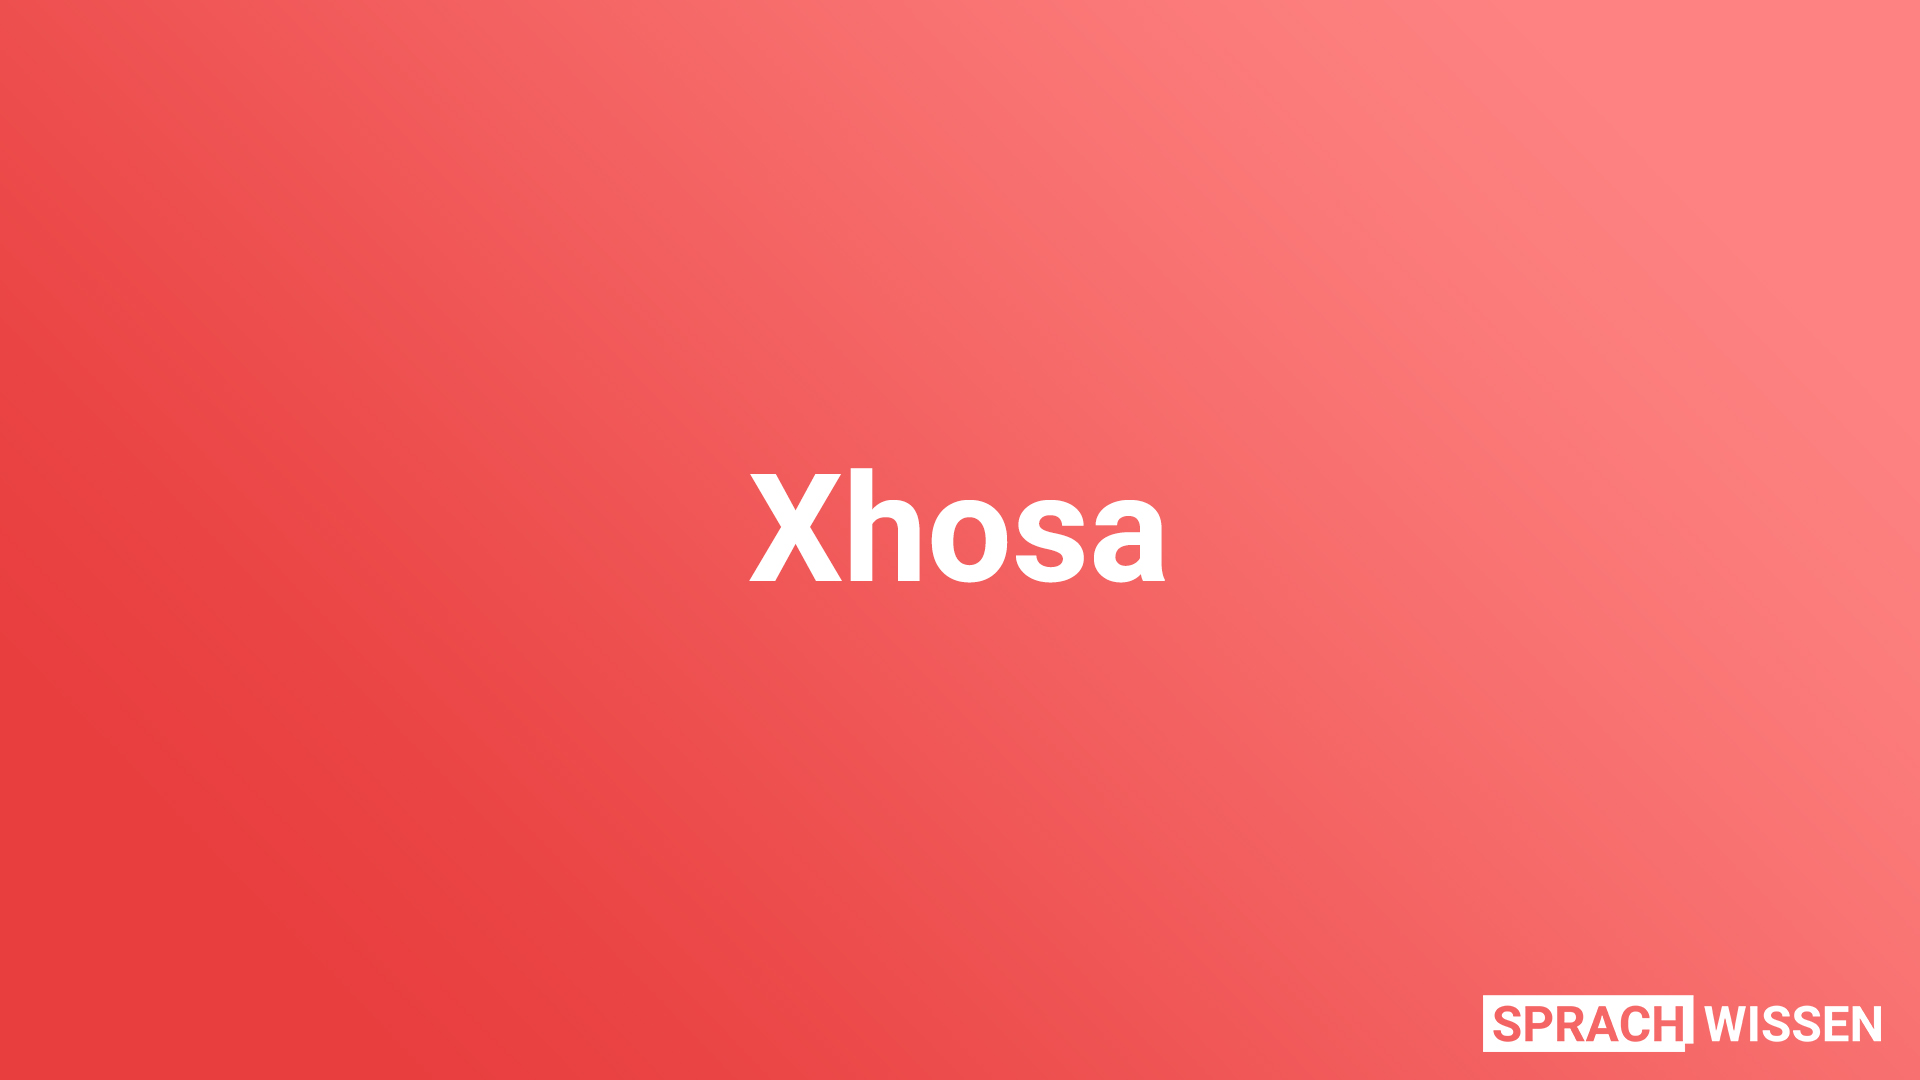 Xhosa